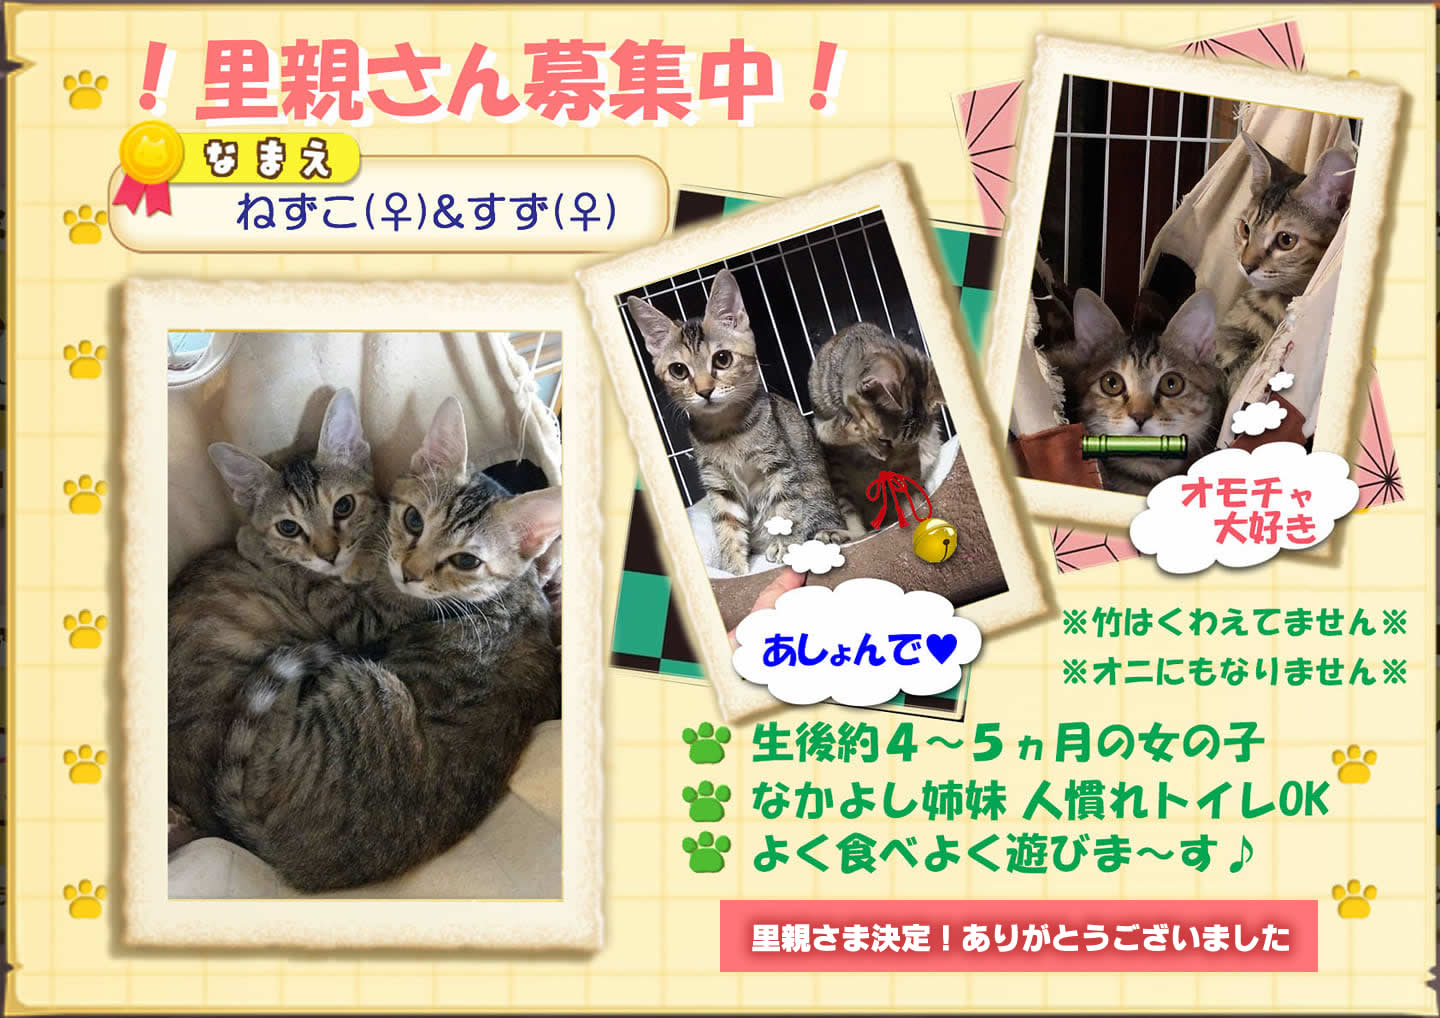 子猫の里親さん決定しました！ありがとうございました。
いつつぼし動物病院　石川県野々市市